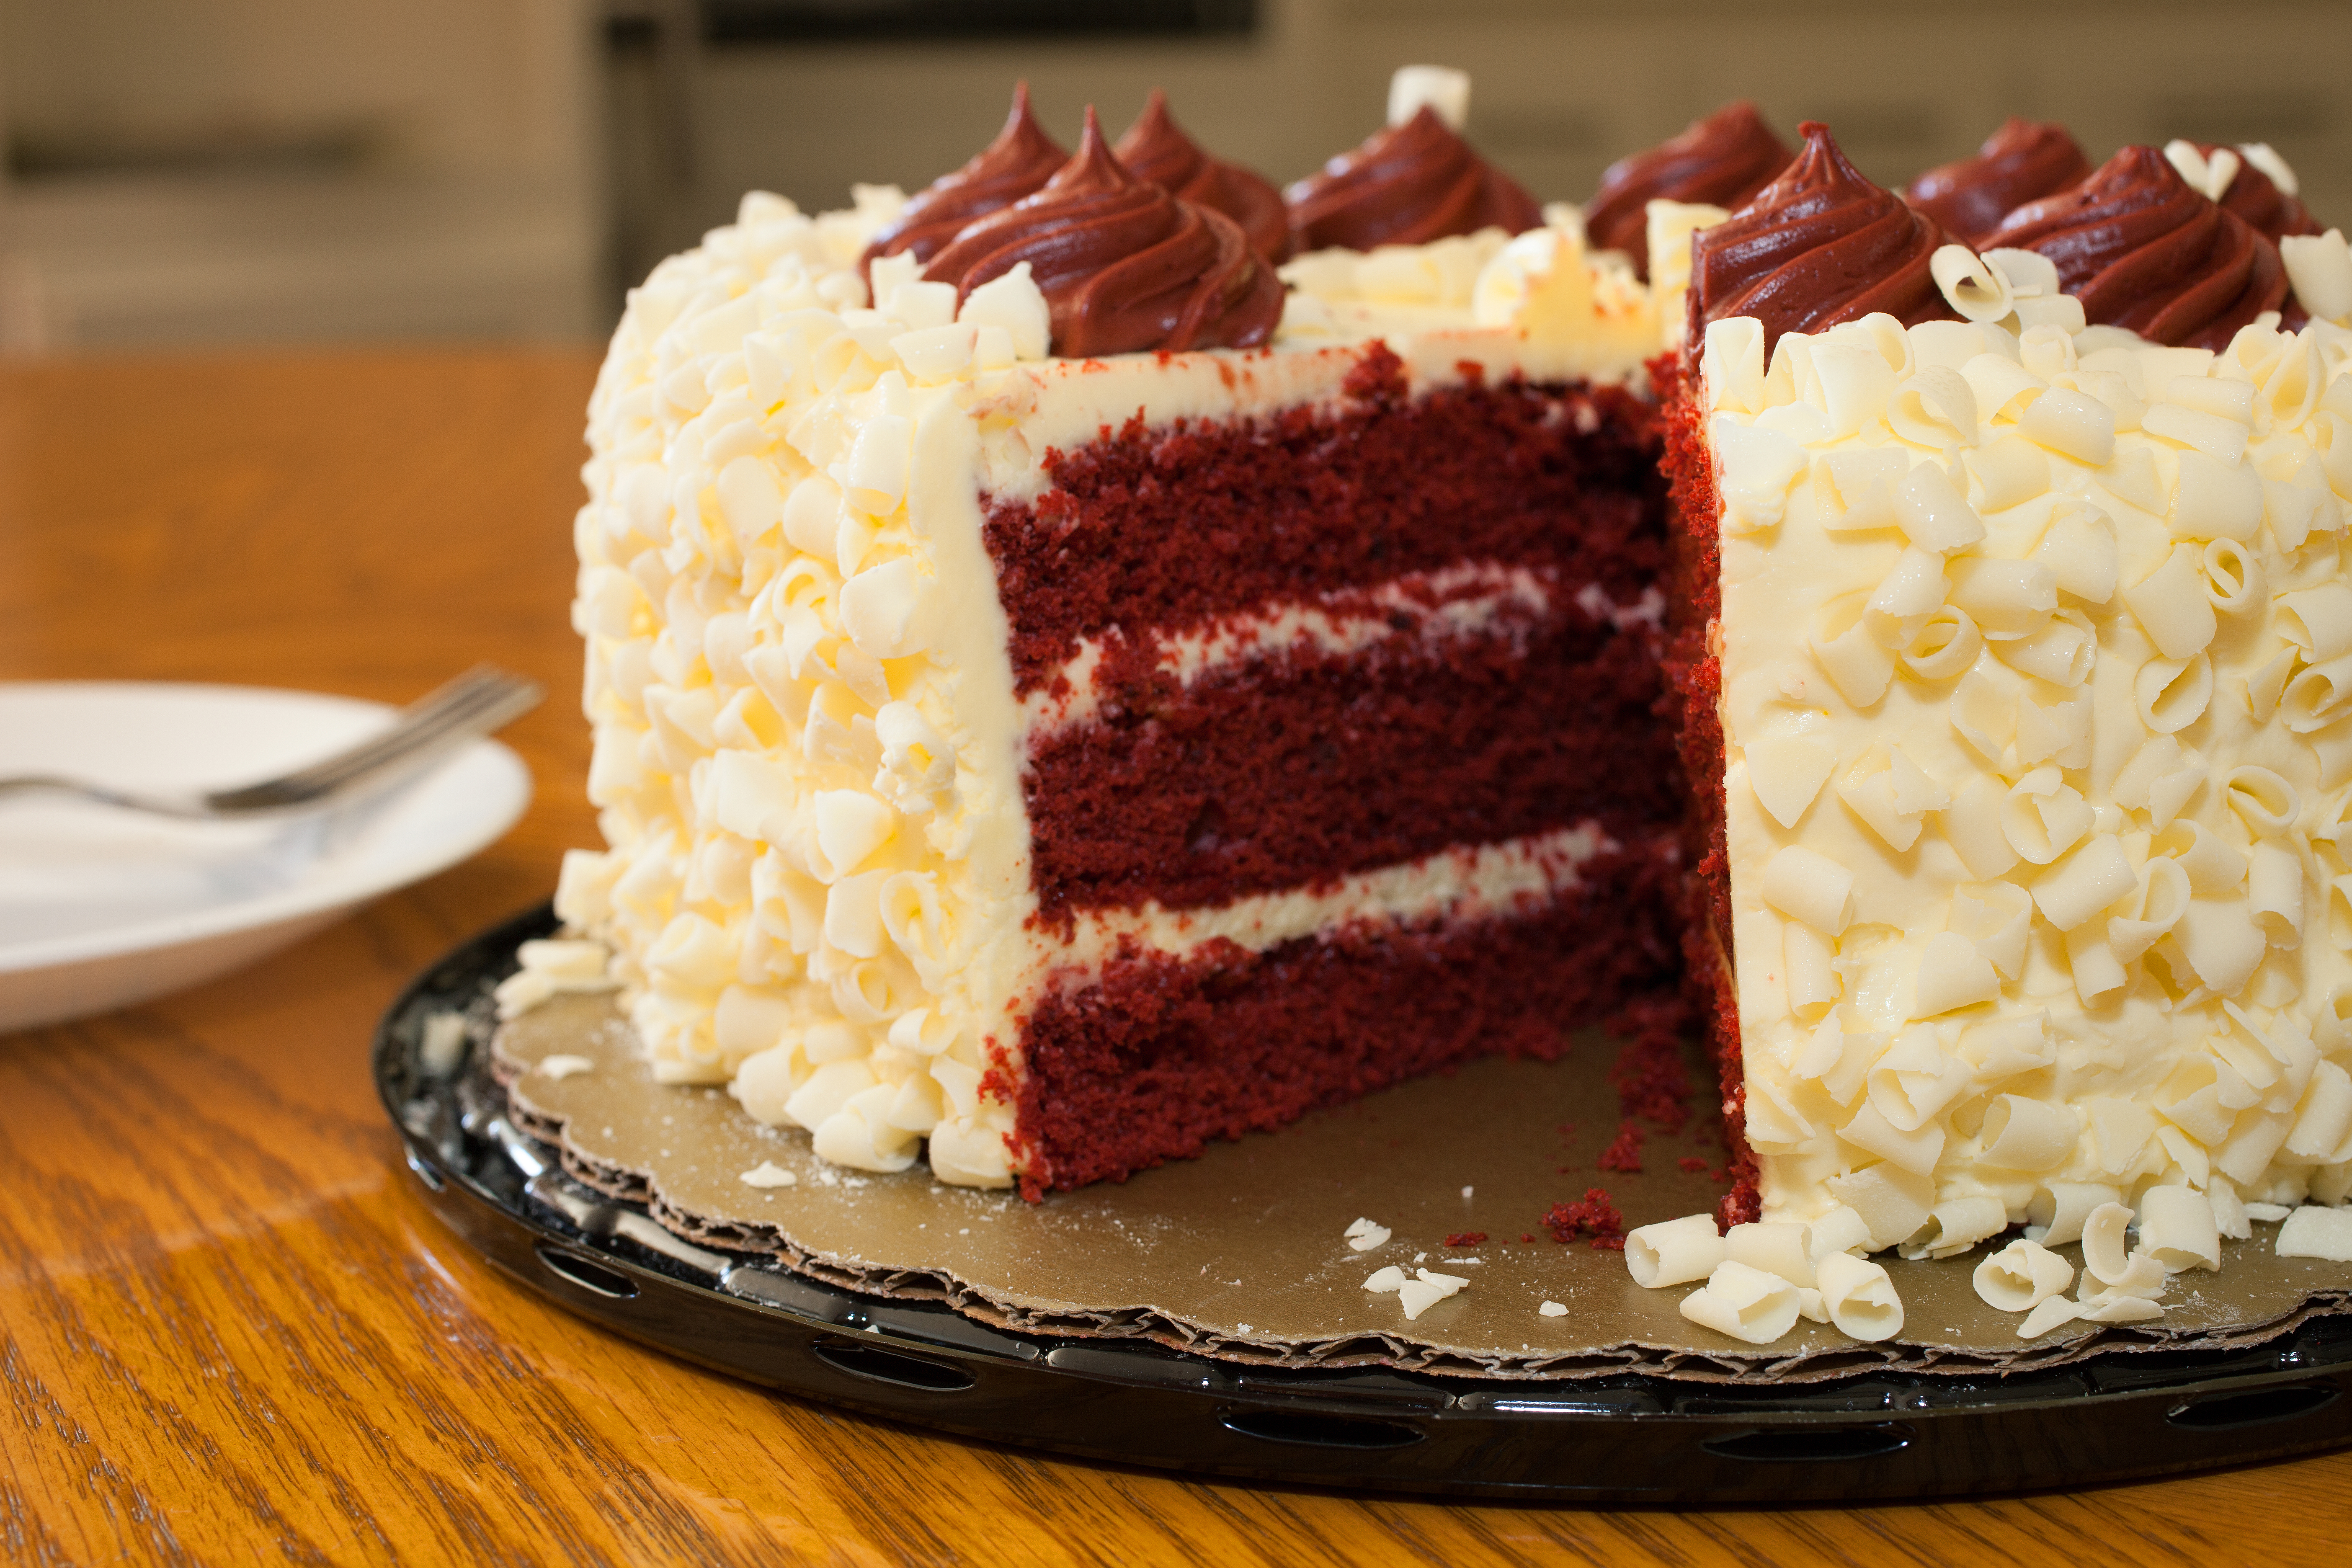 Red velvet cake on the table | Source: Shutterstock